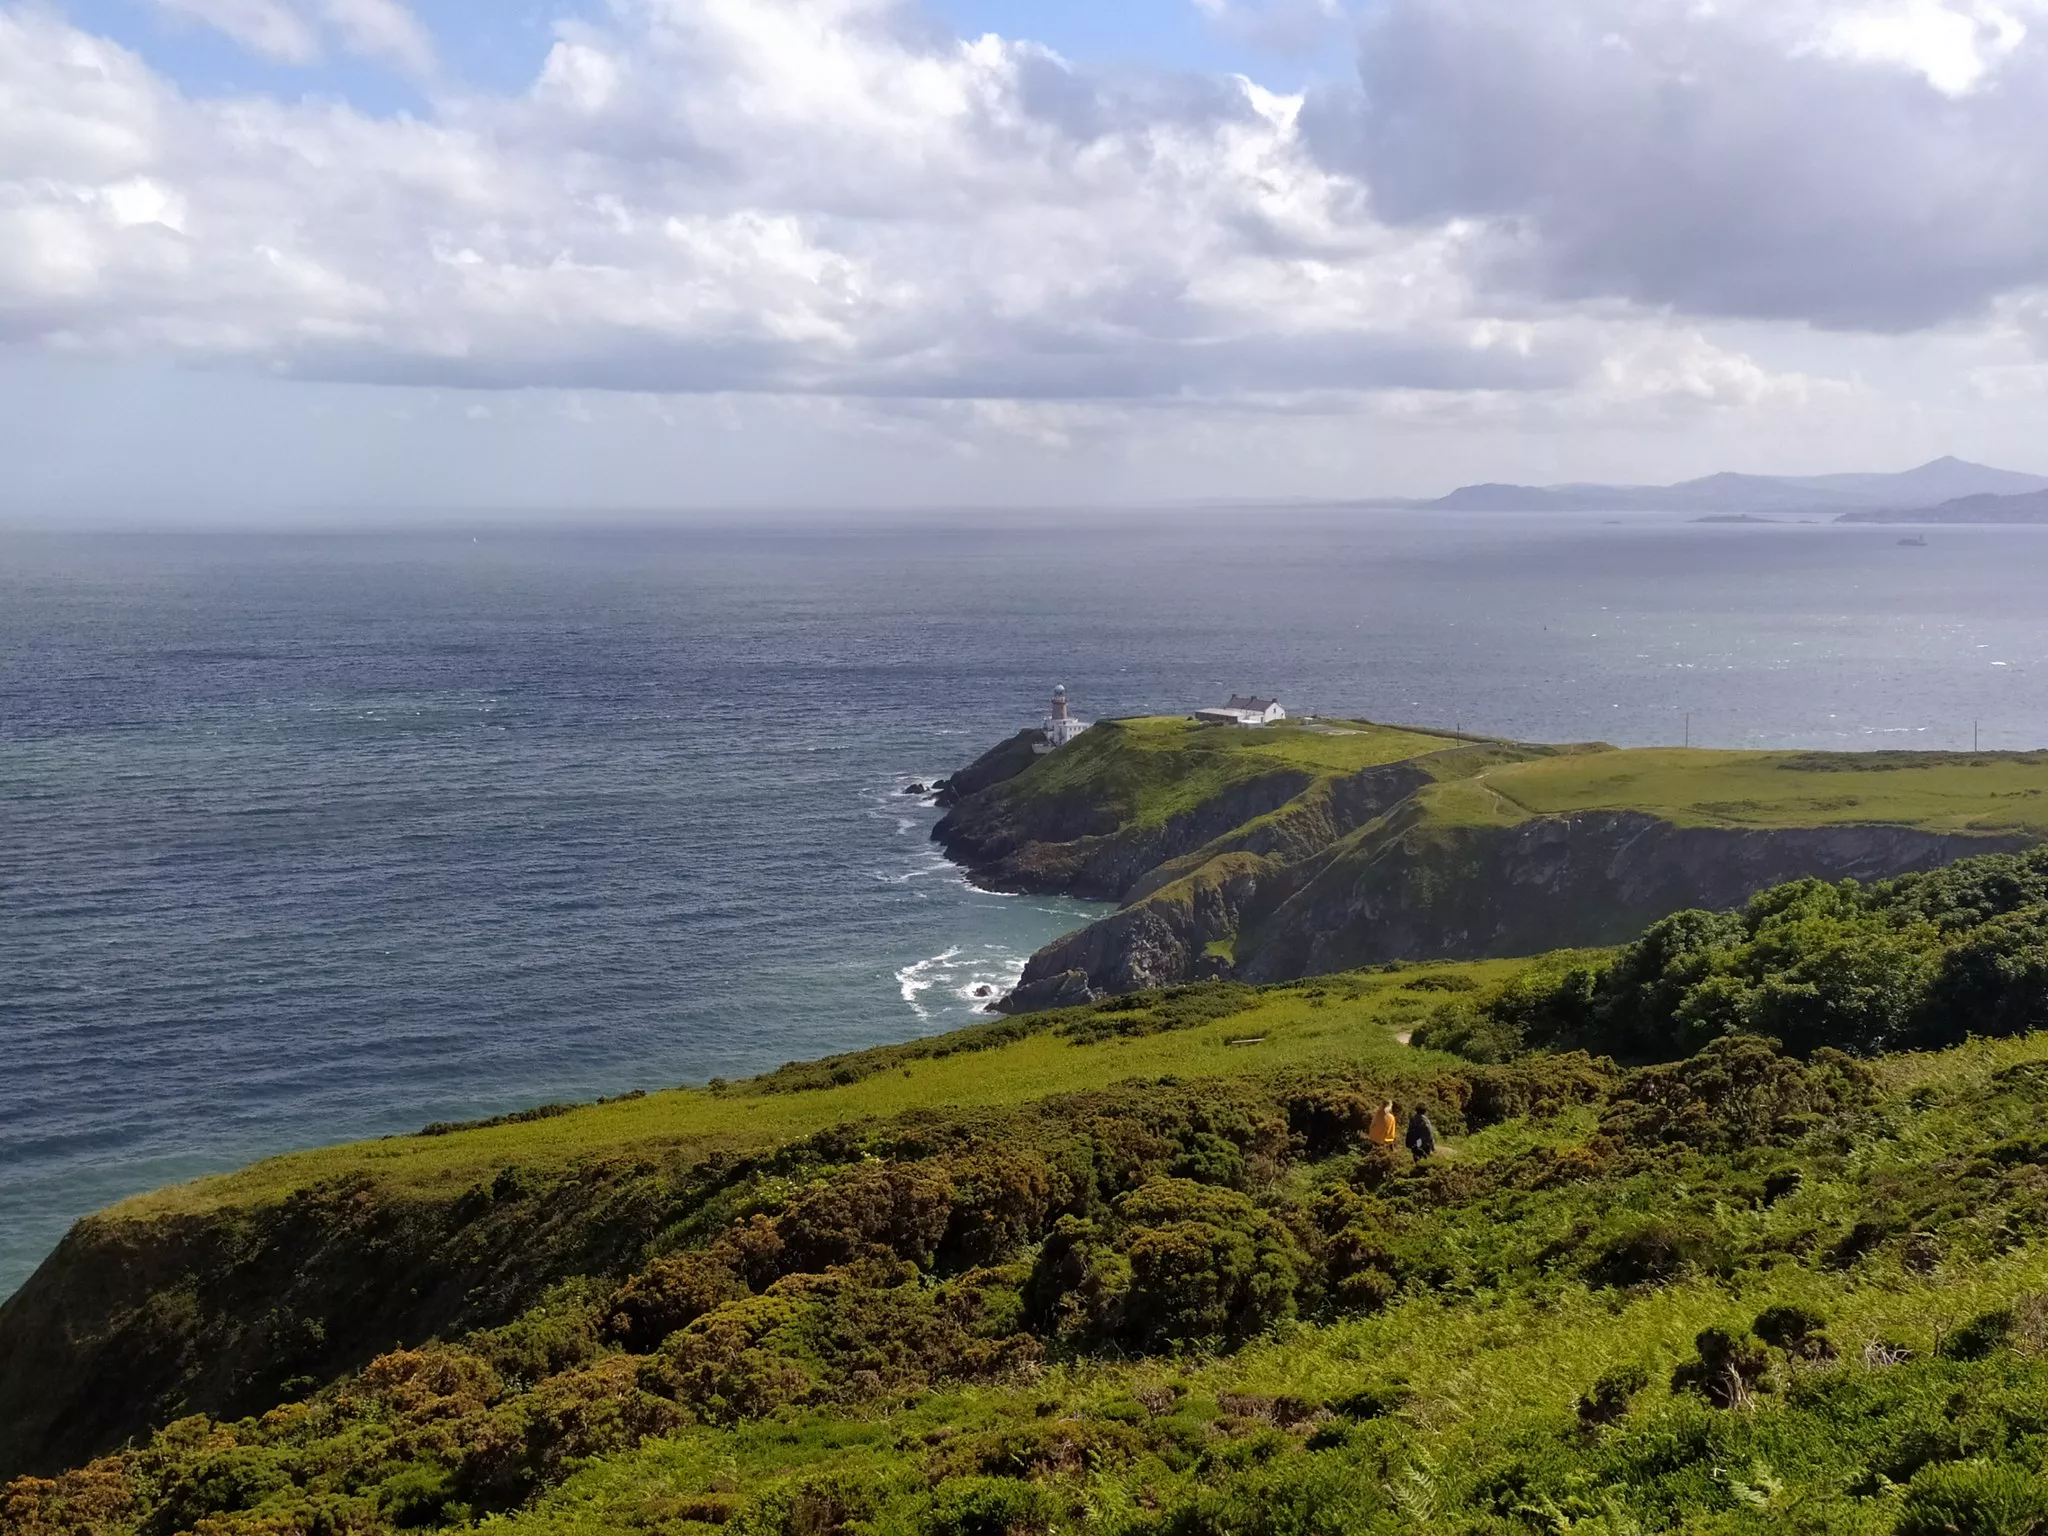 Vihreää maisemaa merenrannalla Irlannissa.